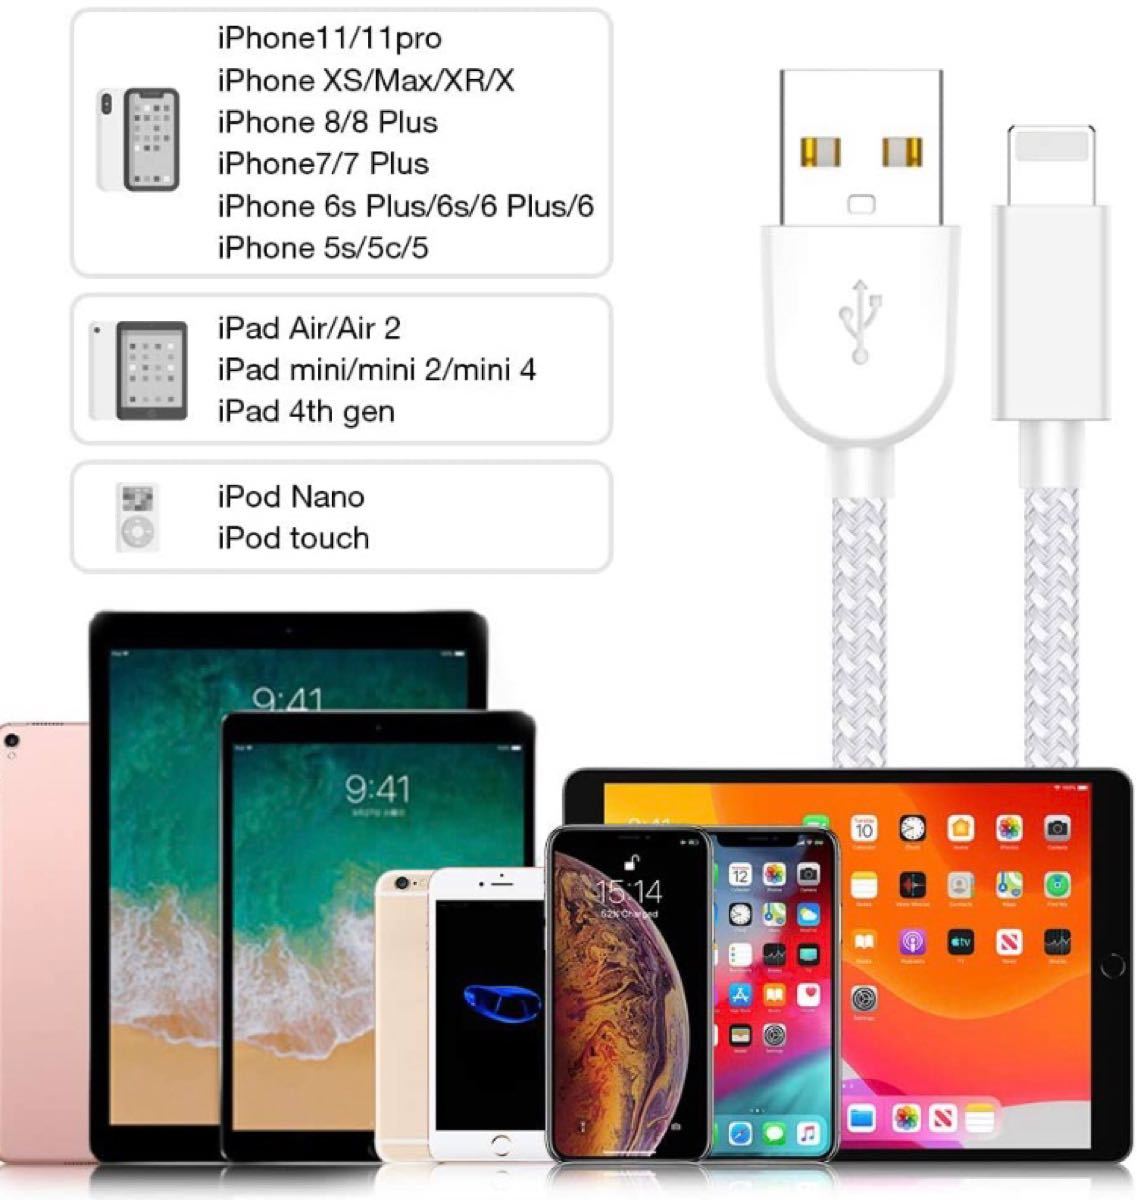 5本セットiPhone充電ケーブル ライトニングケーブル シルバーグレー iPhone 急速充電Lightning USBケーブル